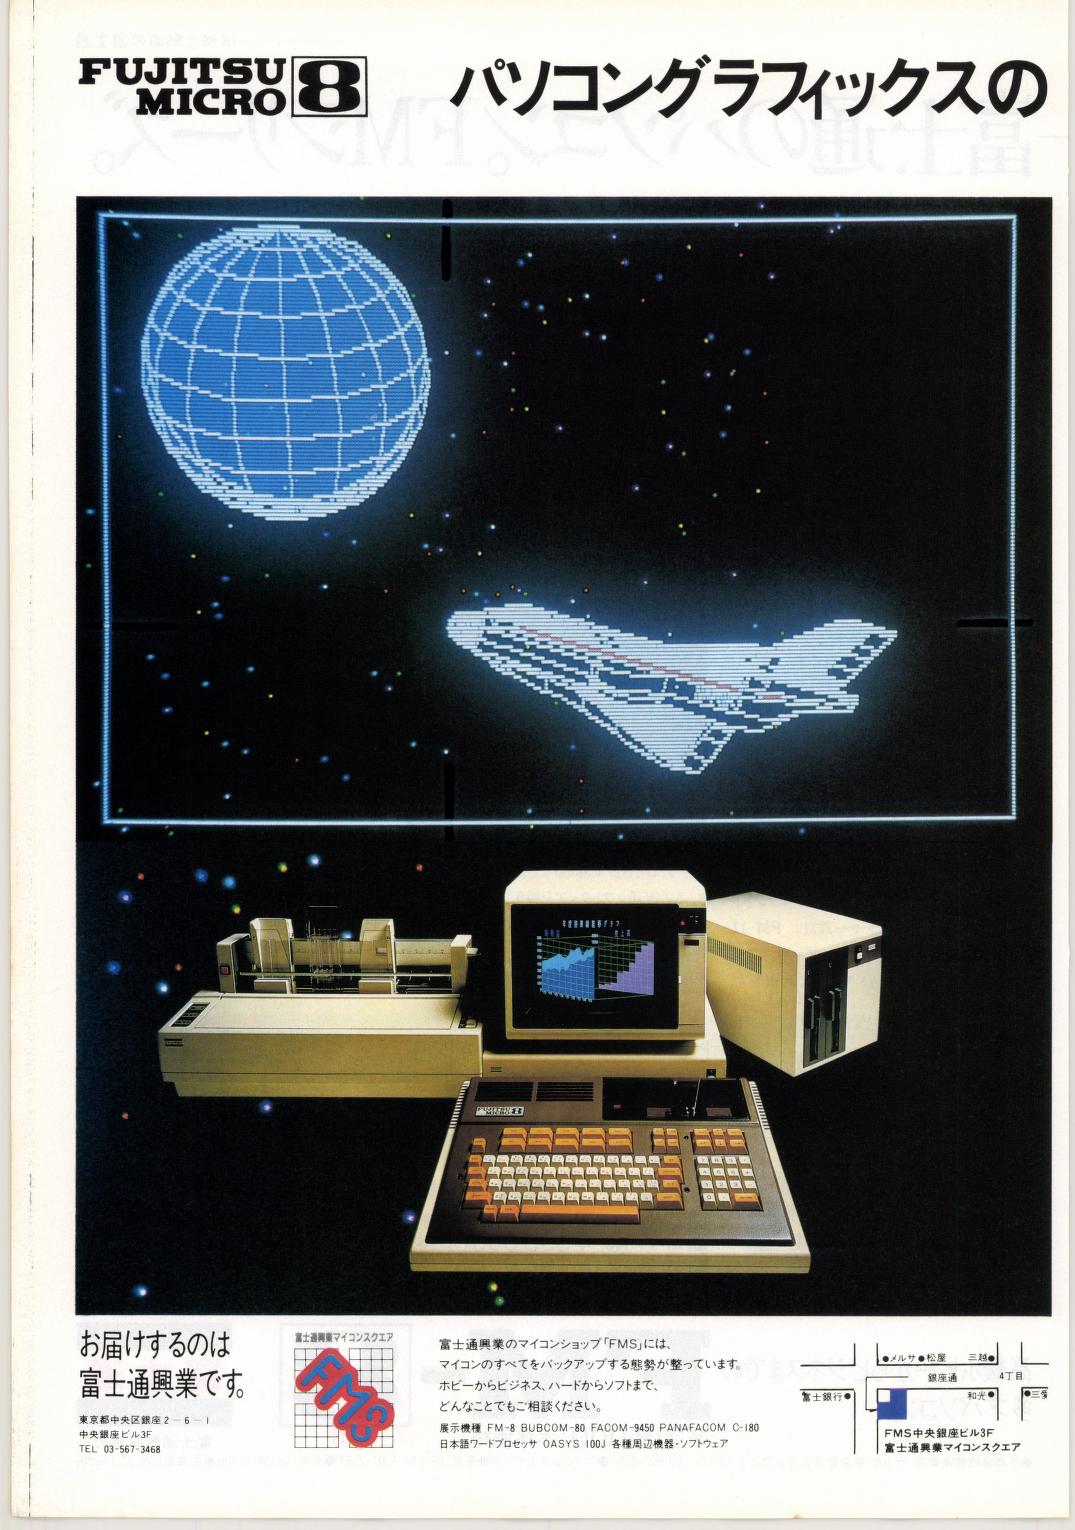 I/O アイオー 1982年 NO.12 雑誌 ビジネス用 簡易言語 マイコン